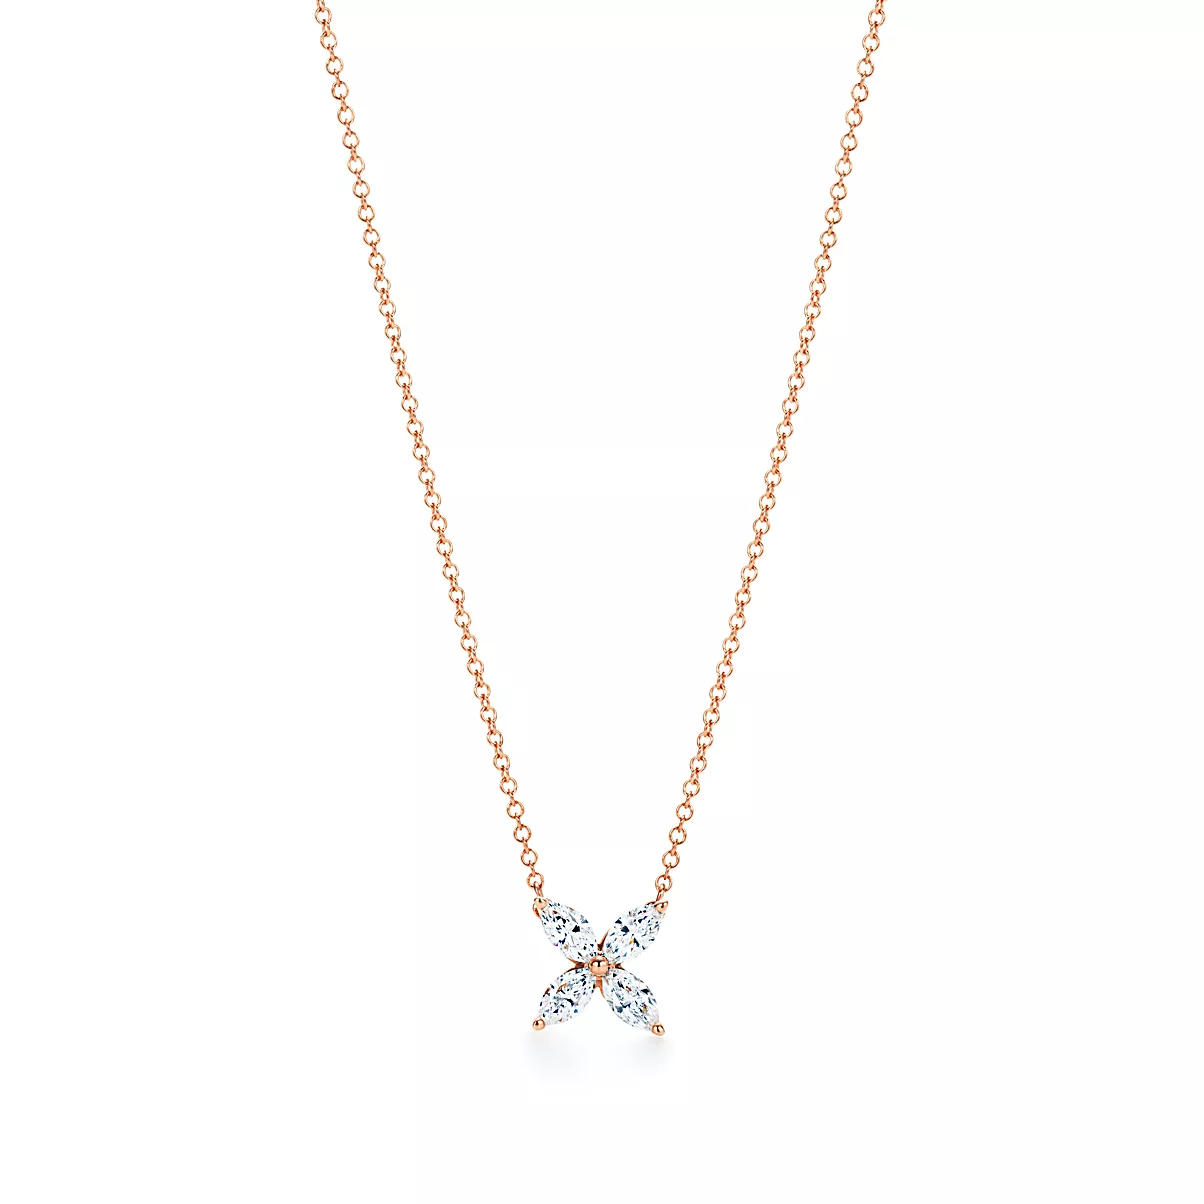 Tiffany Victoria Pendant w/Chain 18K 로즈 골드 라운드 브릴리언트 다이아몬드 One Scale